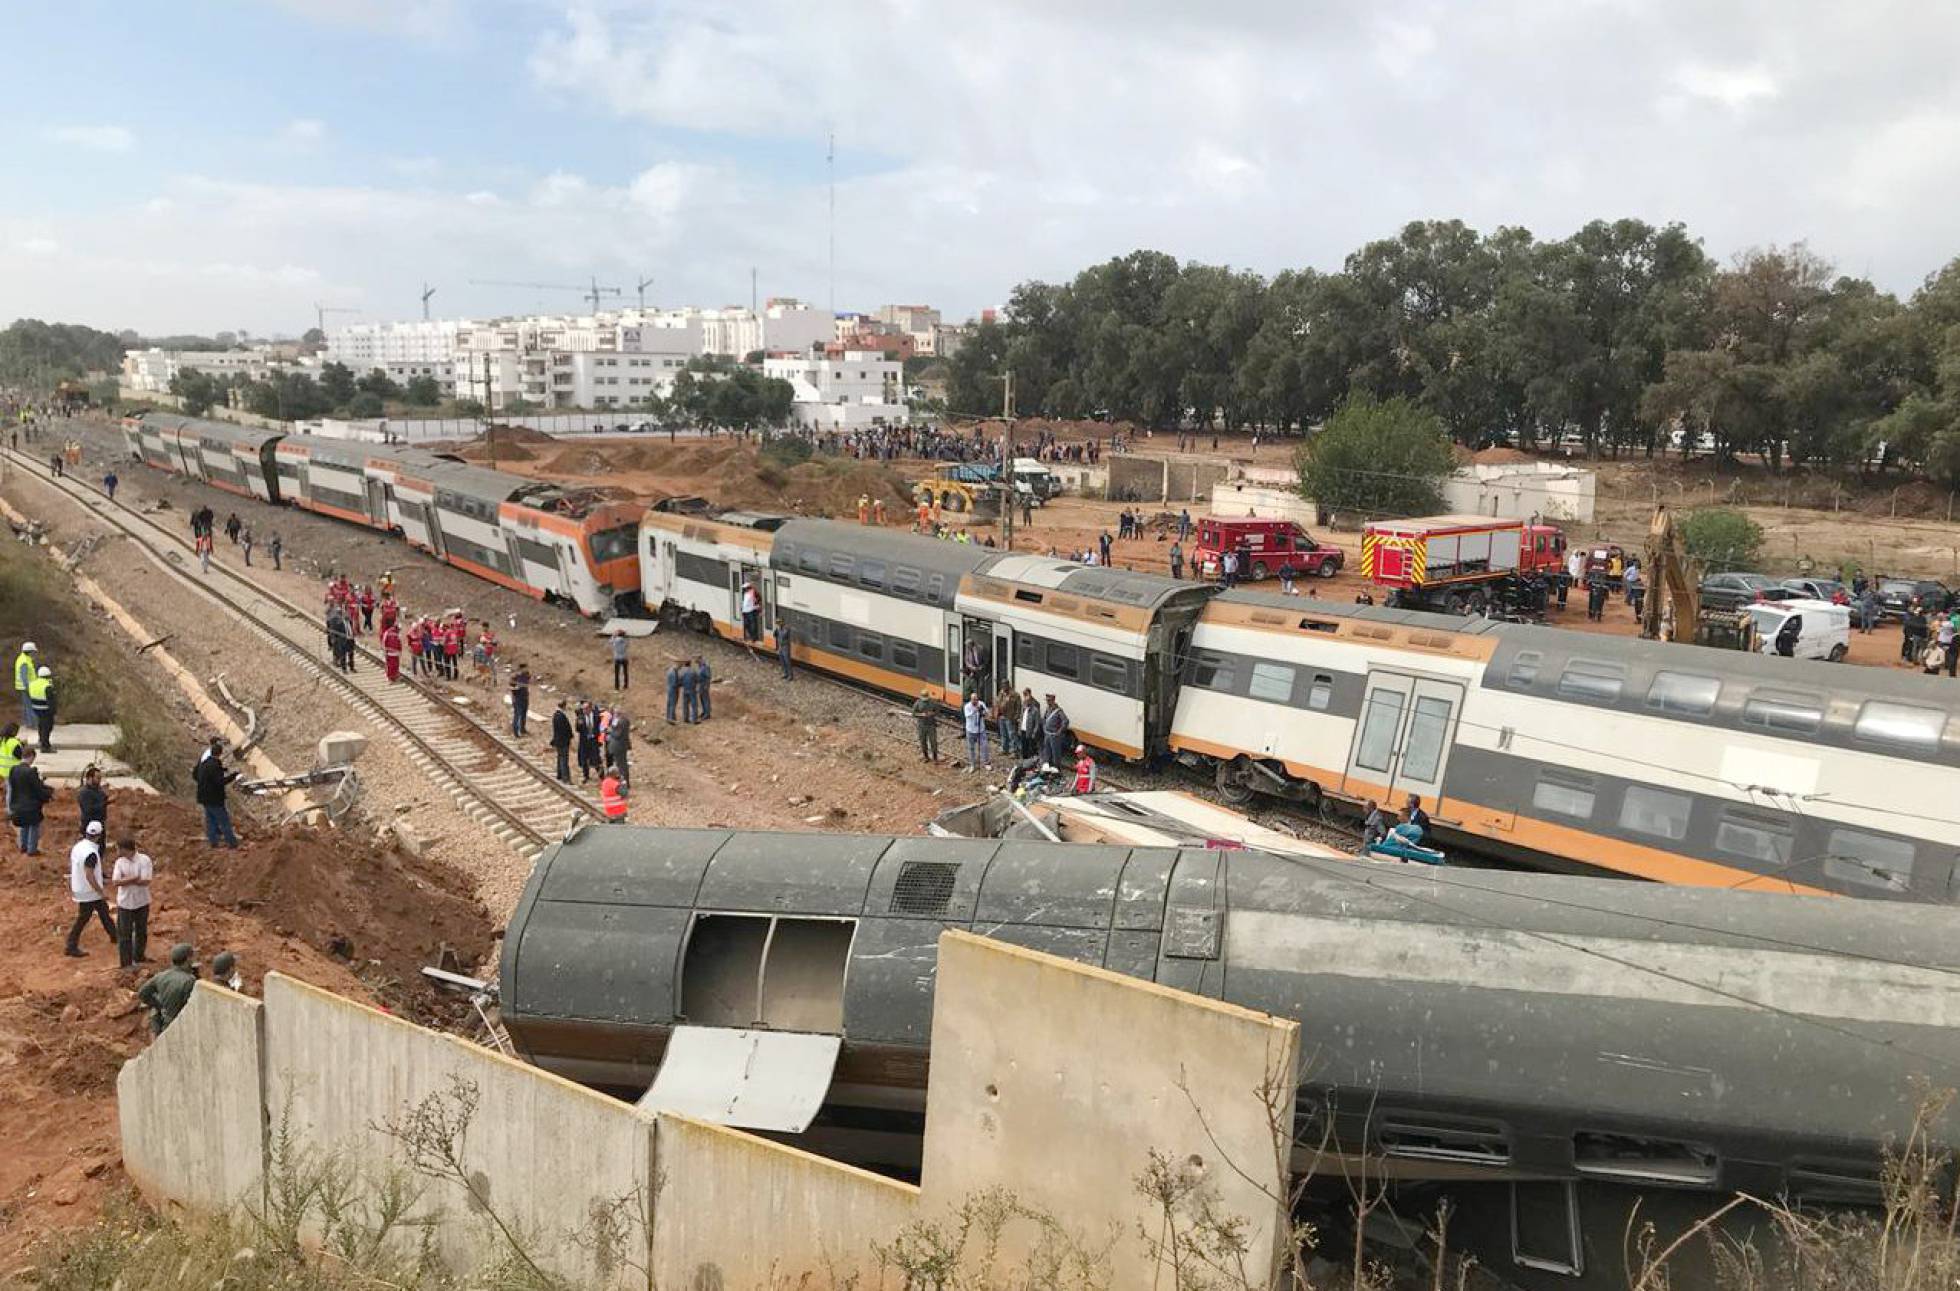 Vista general del tren de pasajeros que ha descarrilado este martes cerca de Rabat, en Marruecos.